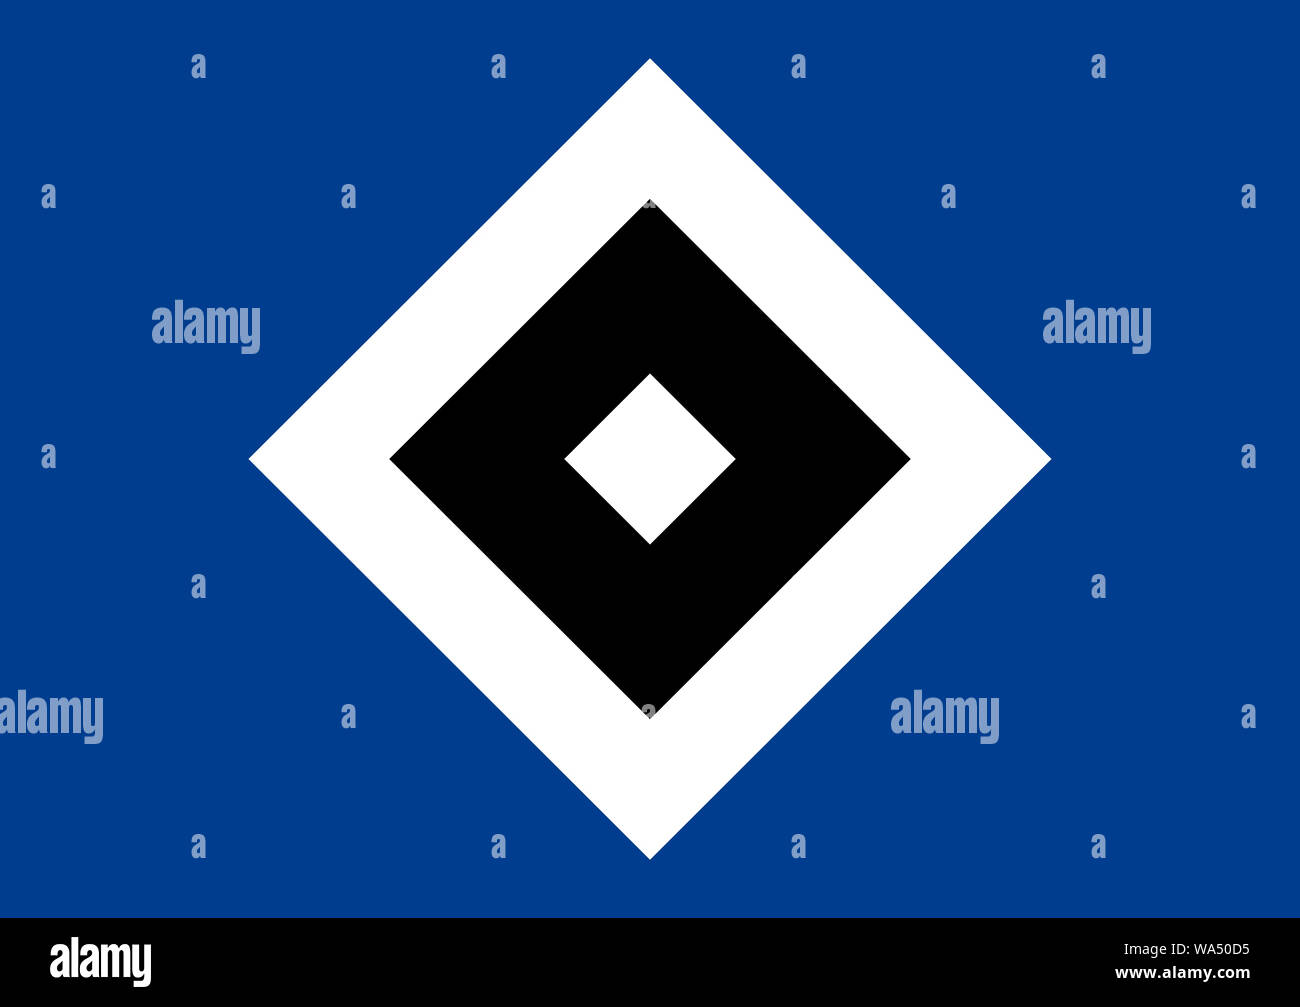 El logotipo del equipo de fútbol alemán Hamburger SV - HSV - Alemania. Foto de stock